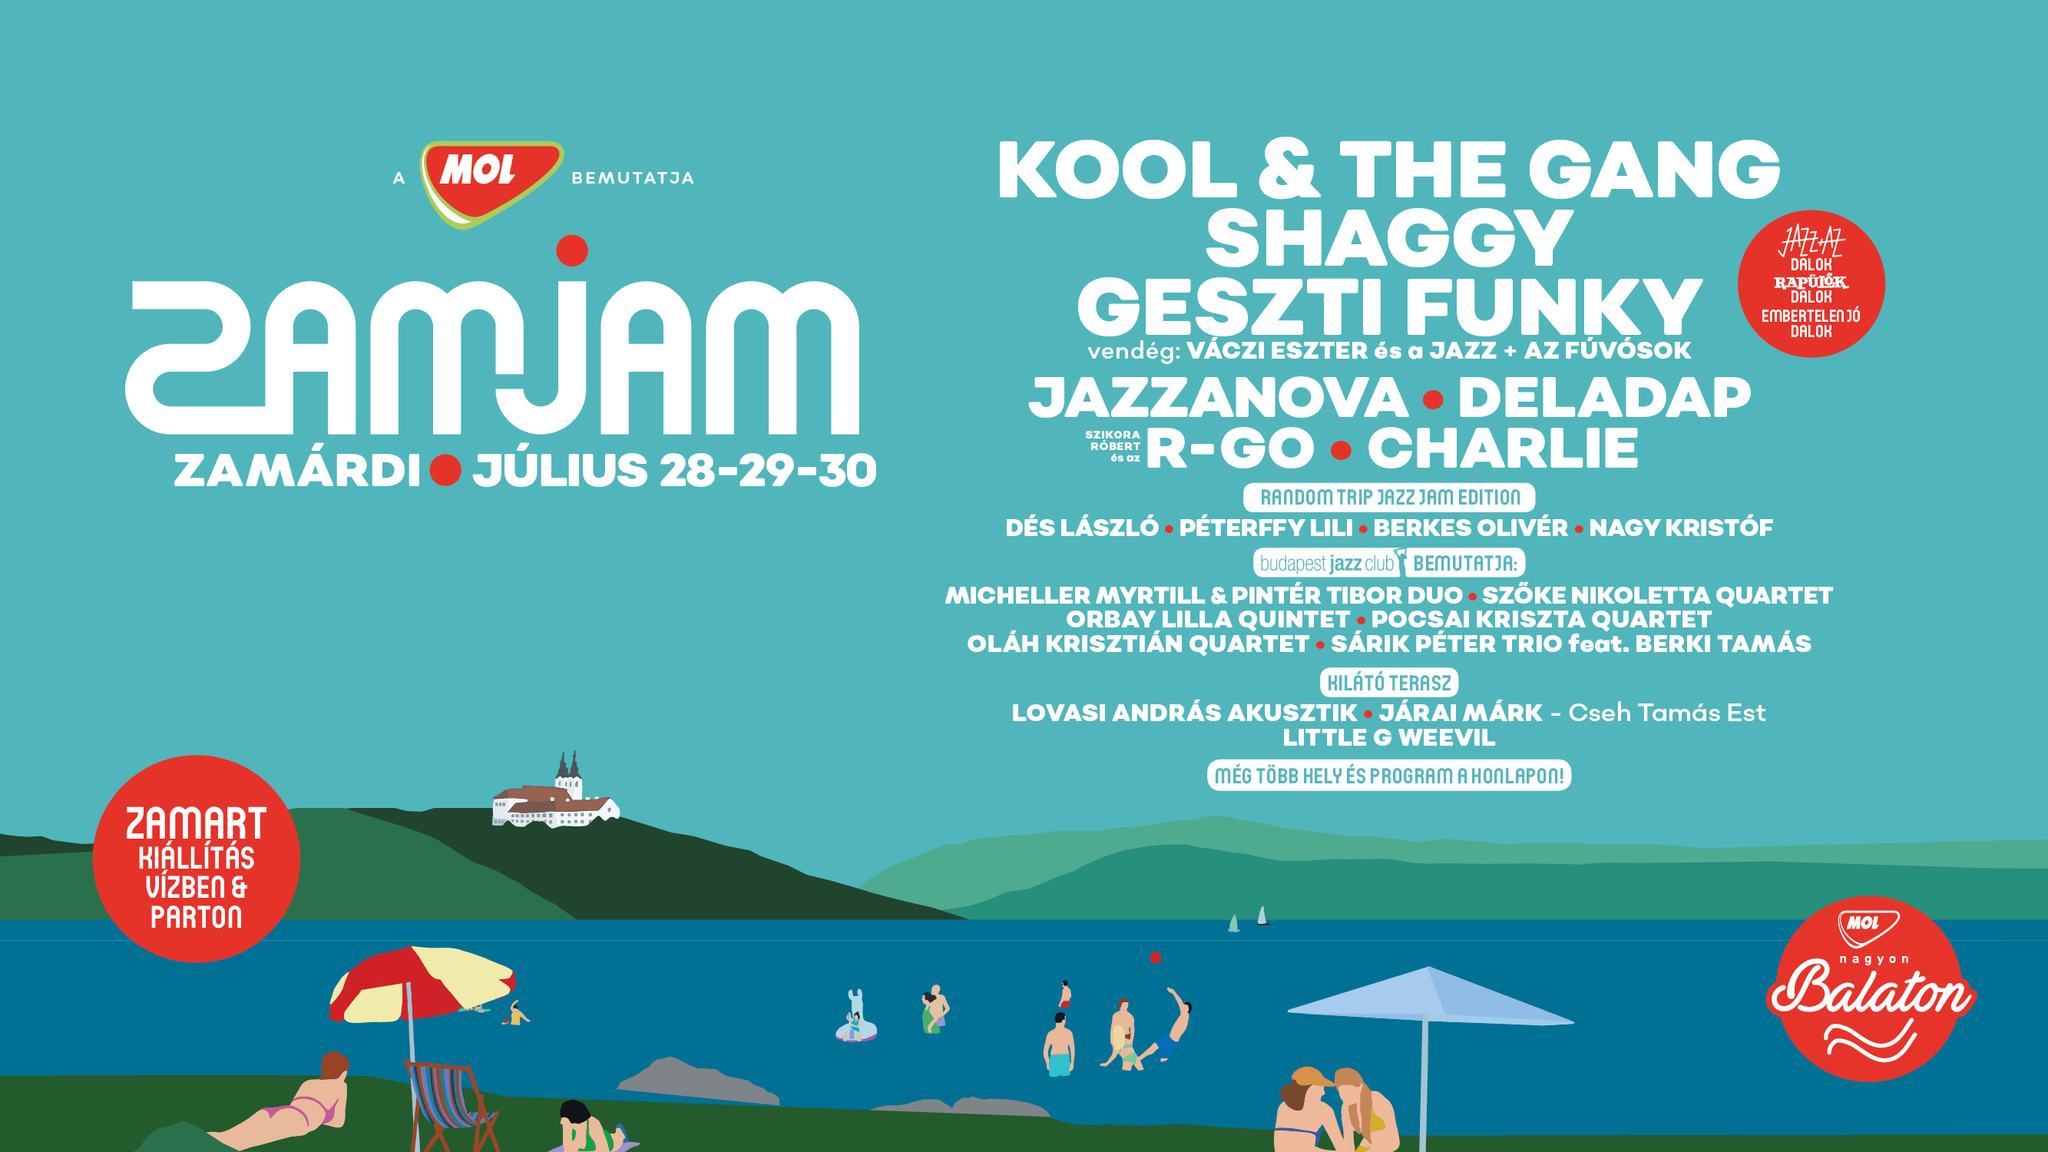 'Zam Jam Fest', Zamárdi, 28 30 July